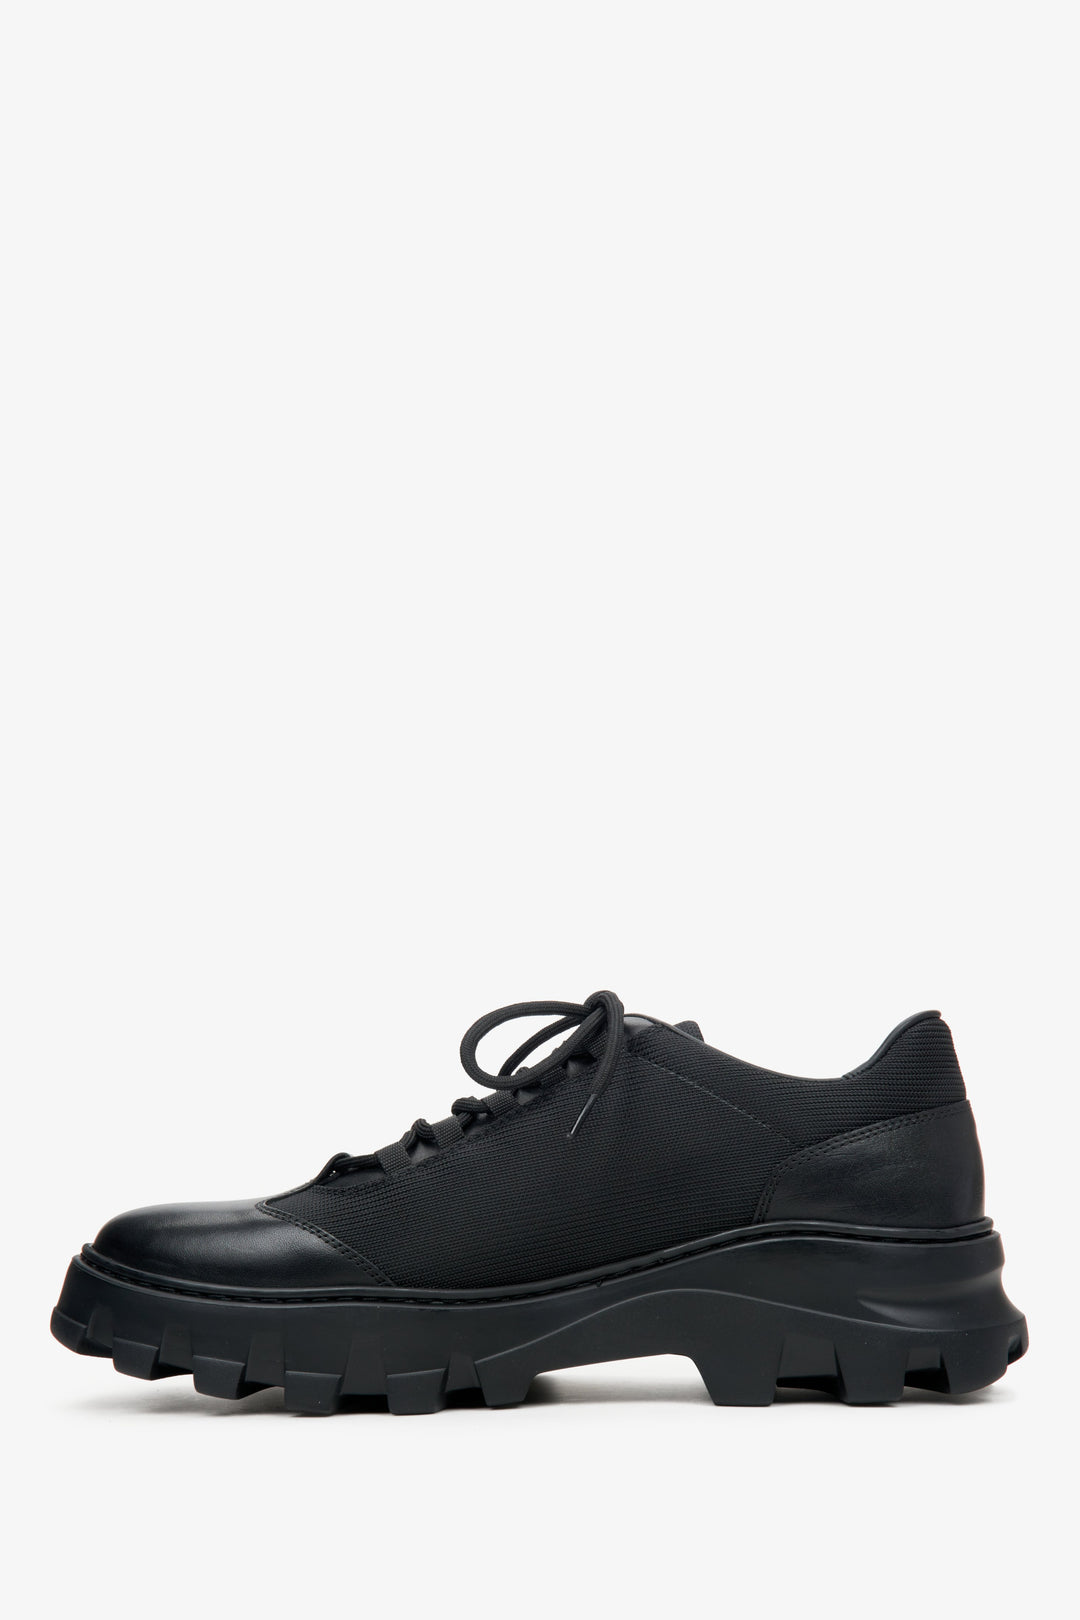 Men's black leather-textile shoes by Estro - shoe profile.